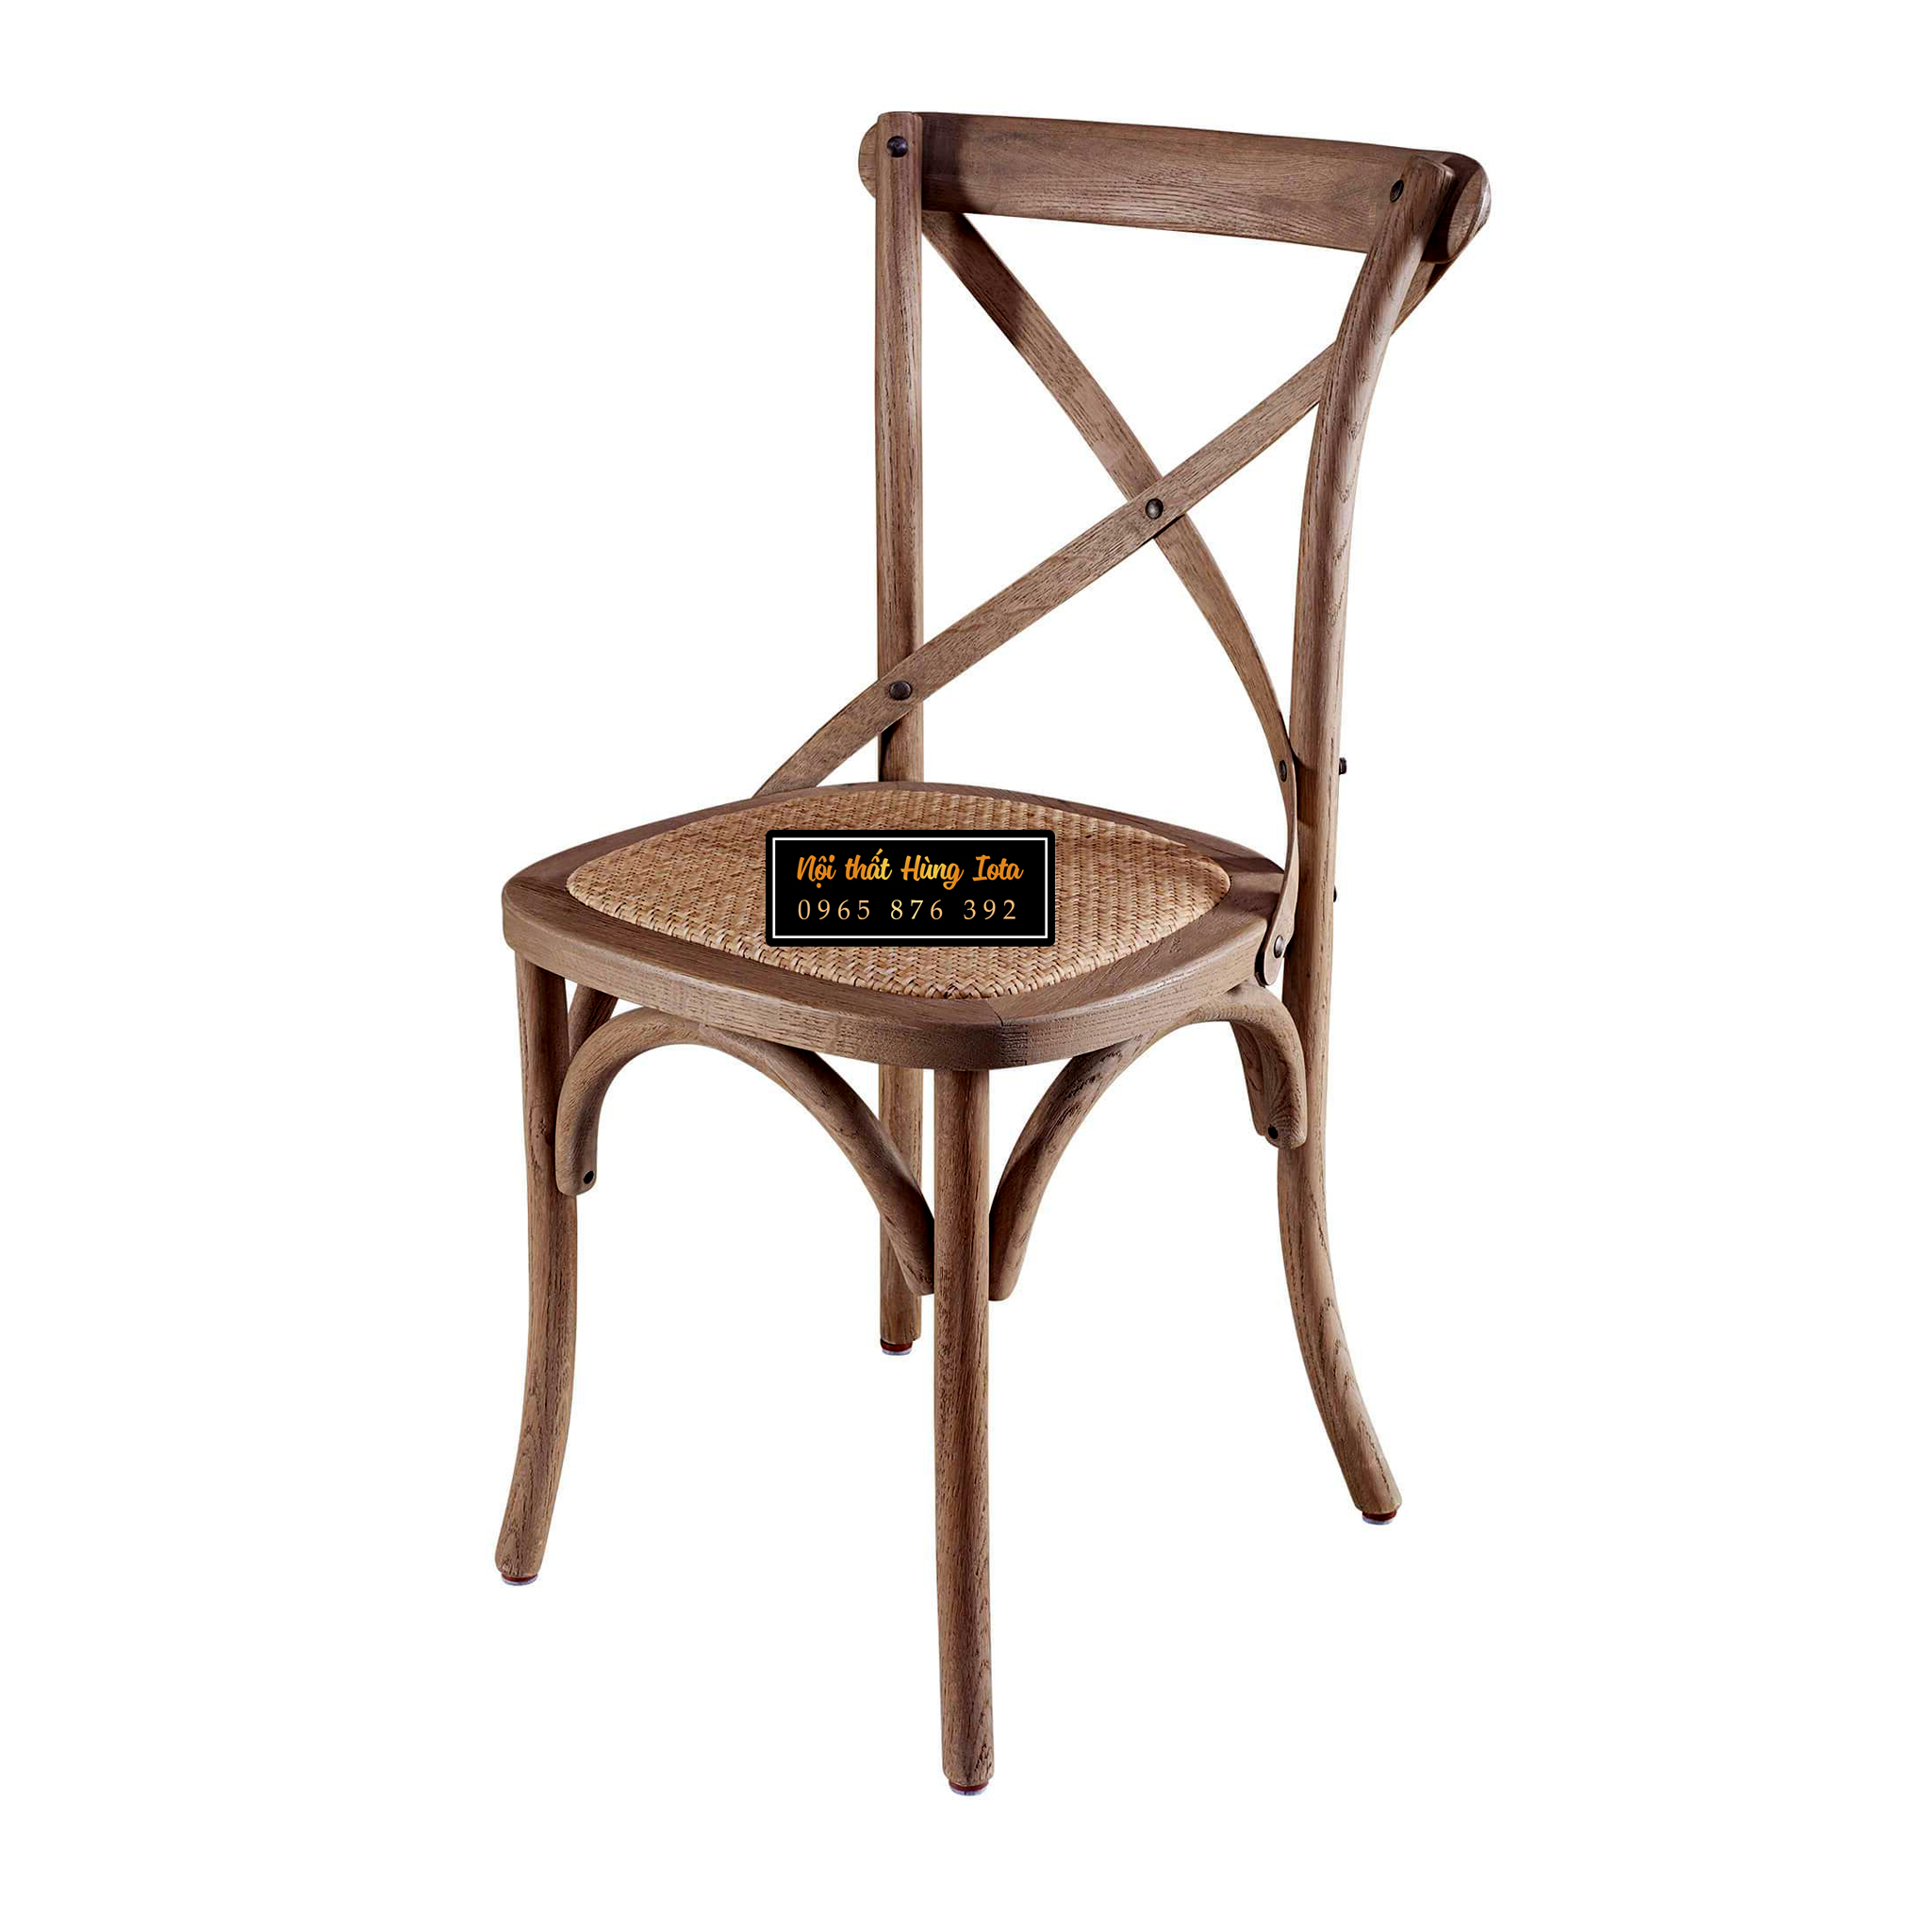 Ghế bistro gỗ sồi màu gỗ đẹp giá rẻ tại xưởng